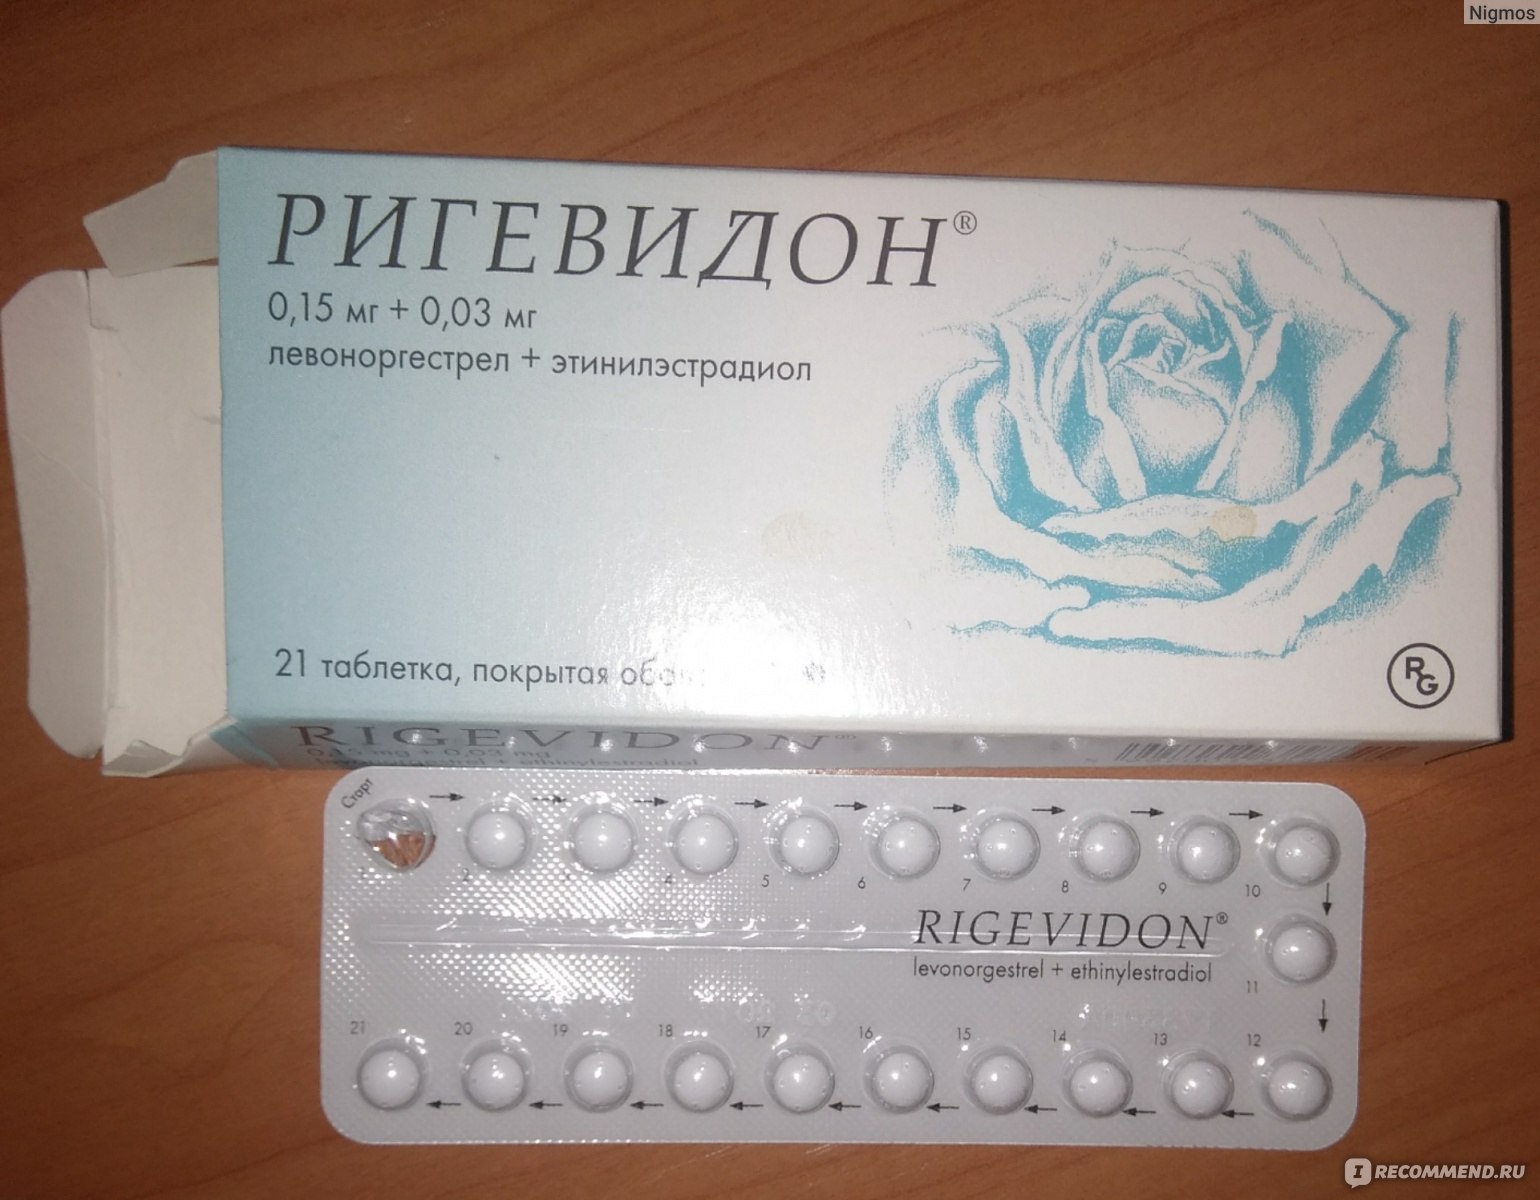 Противозачаточные таблетки для мужчин название. Противозачаточные таблетки ригевидон. Гормональный препарат ригевидон. Противозачаточные таблетки для женщин ригевидон. Таблетки противозачаточные реговидон.